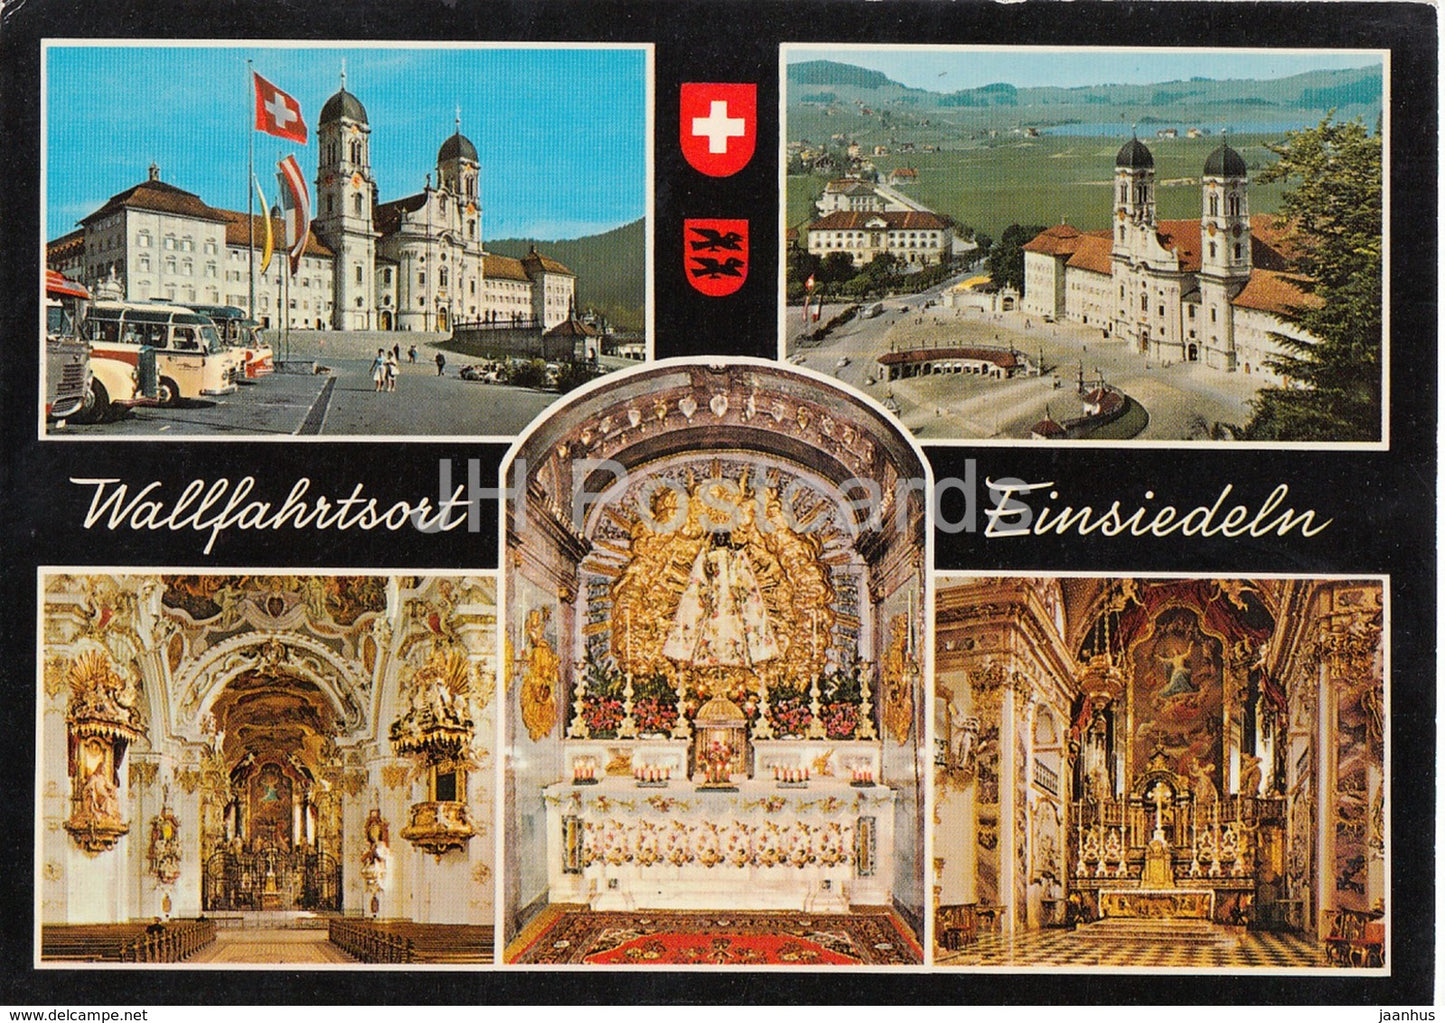 Wallfahrtsort Einsiedeln - bus - multiview - 1887 - Switzerland - unused - JH Postcards